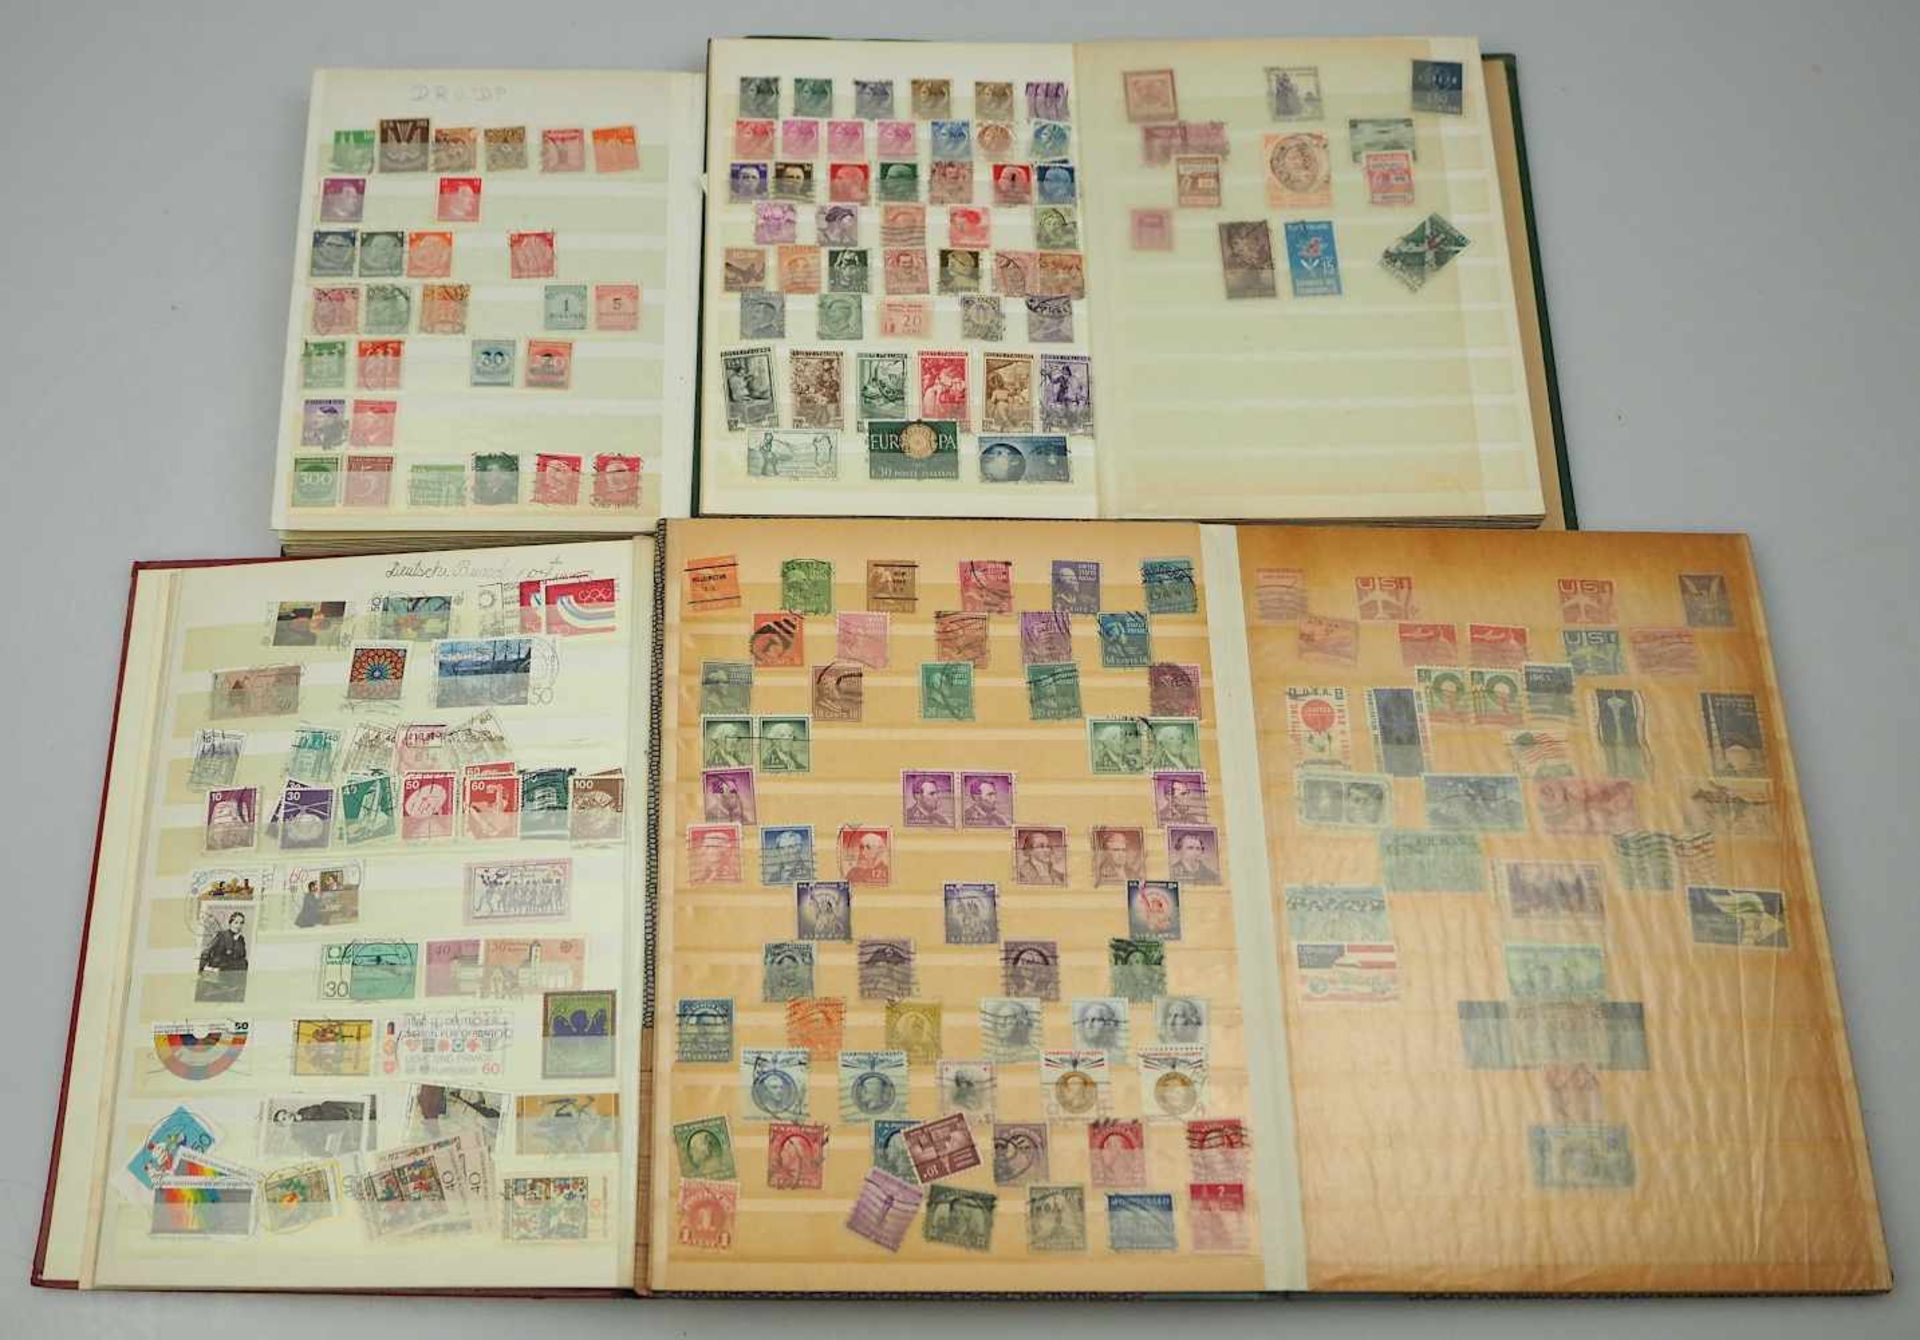 1 Konv. Briefmarken Bayern, Kaiserreich, III. Reich, BRD, DDR u.a. z.T. Posthornsatz gest.